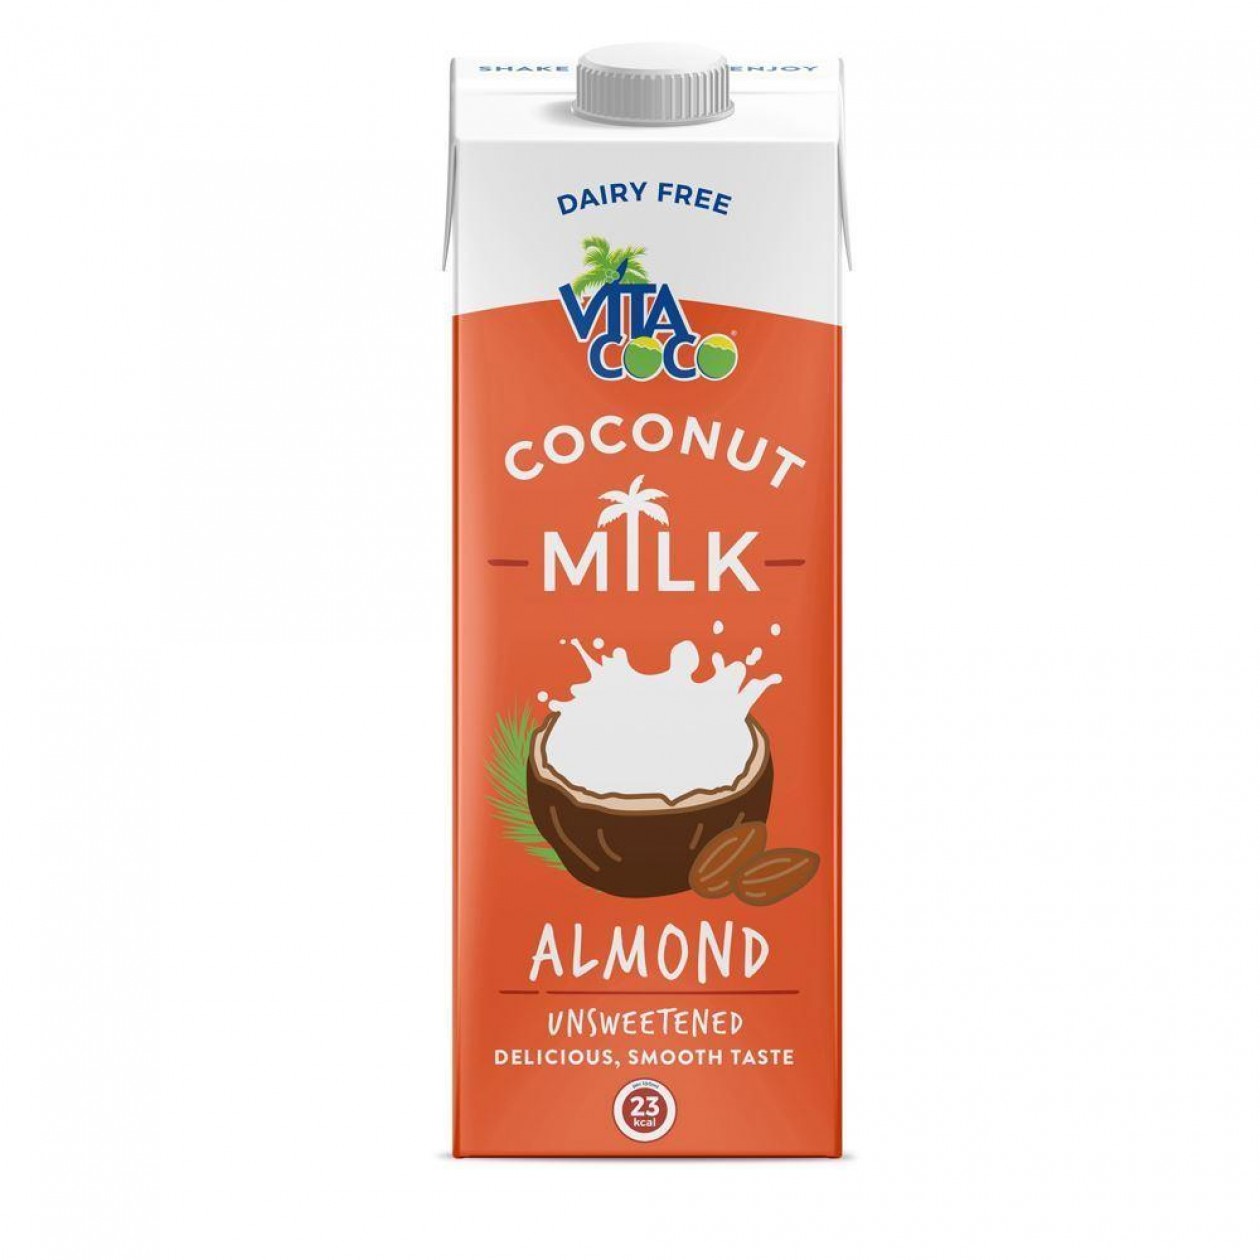 Vita coco ambient milk almond  1L